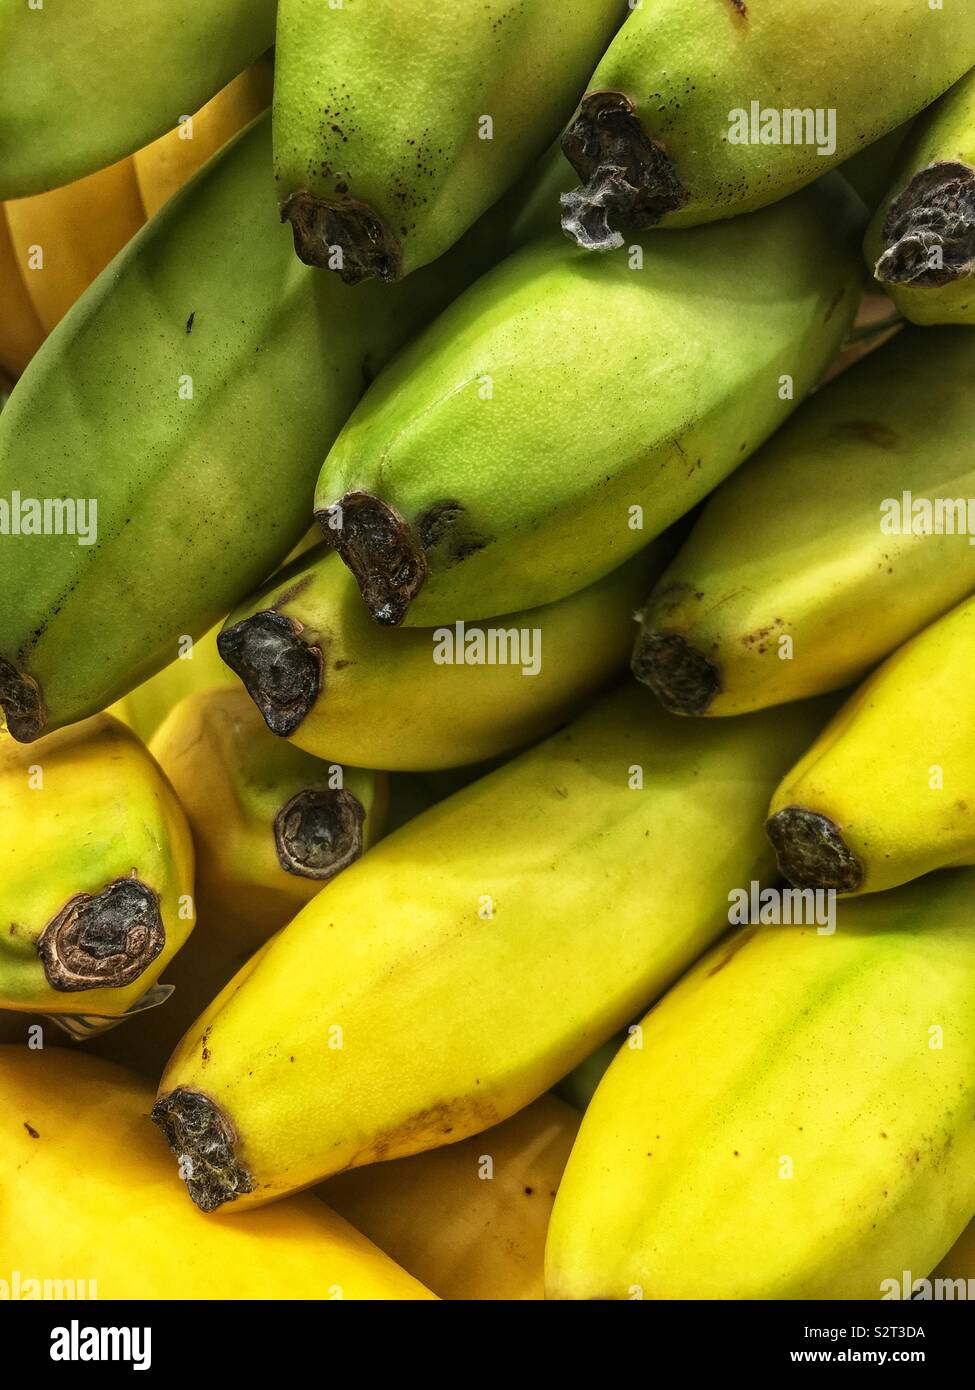 Bunch of fresh yellow bananas. Stock Photo